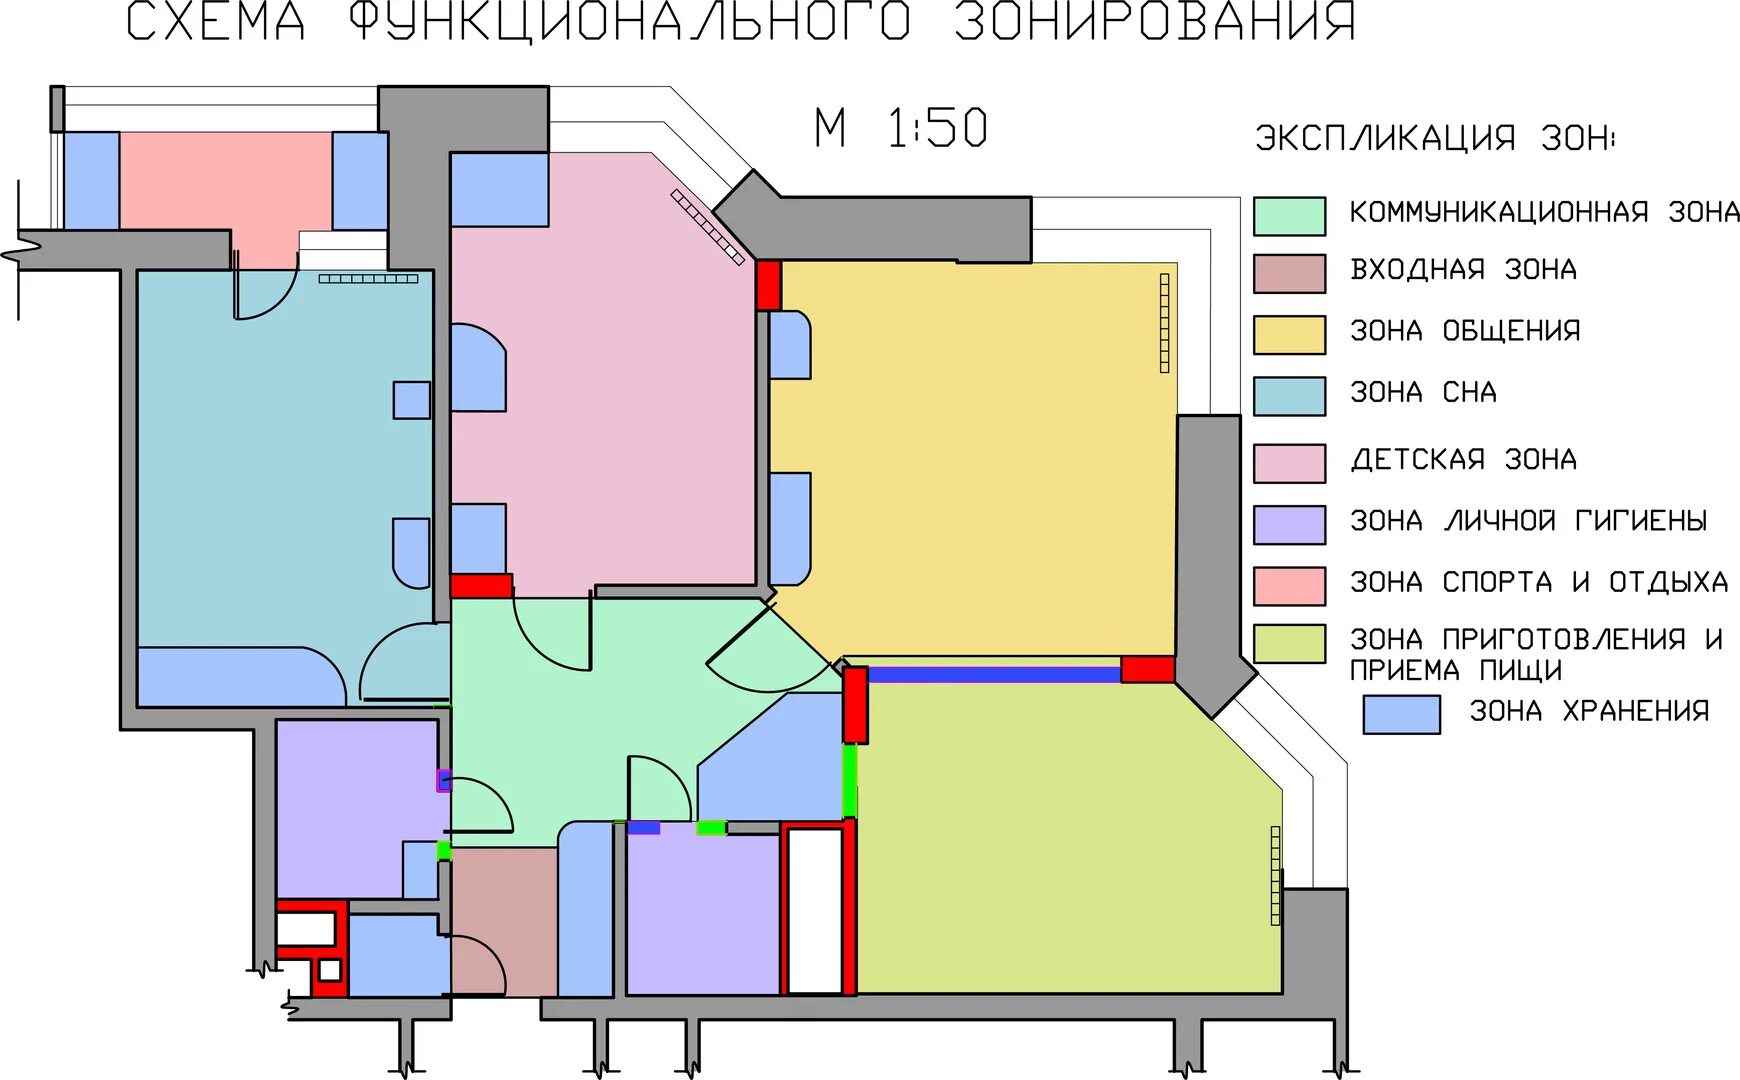 Цветные планы. Схема функционального зонирования здания. Функциональное зонирование квартиры. Функциональное зонирование помещений. План зонирования помещений.